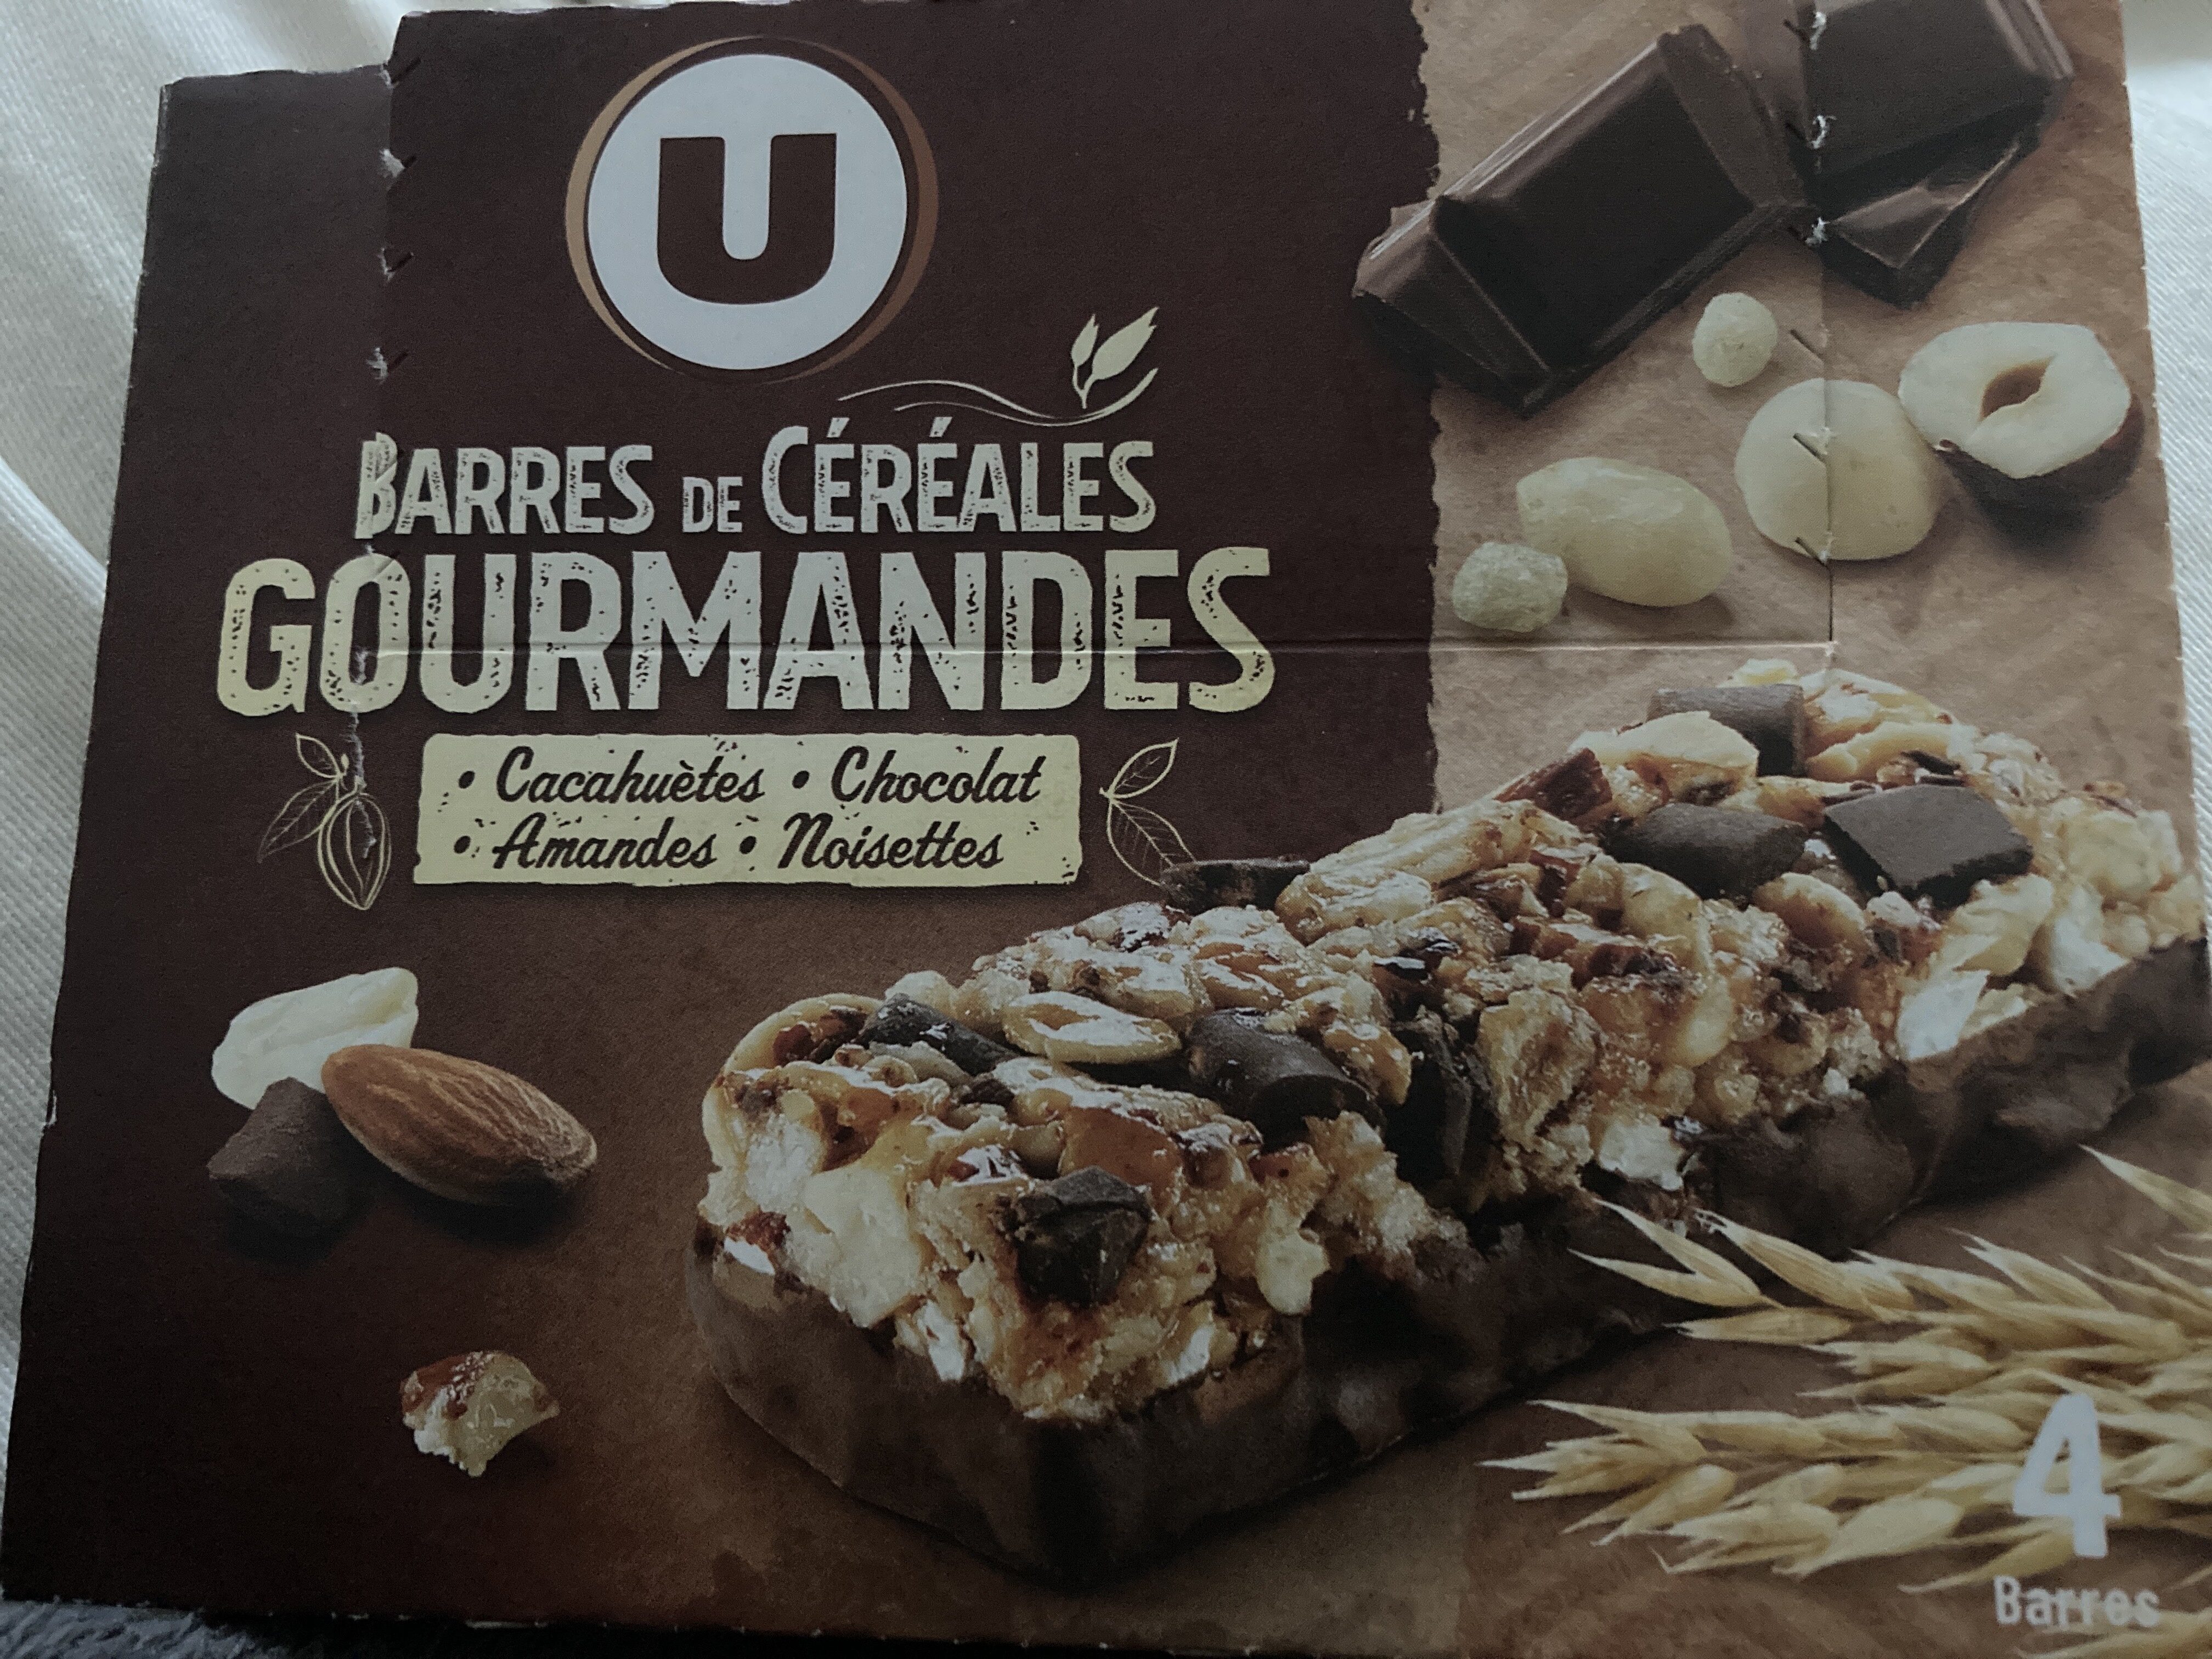 Barres de céréales chocolat cacahuètes - Product - fr